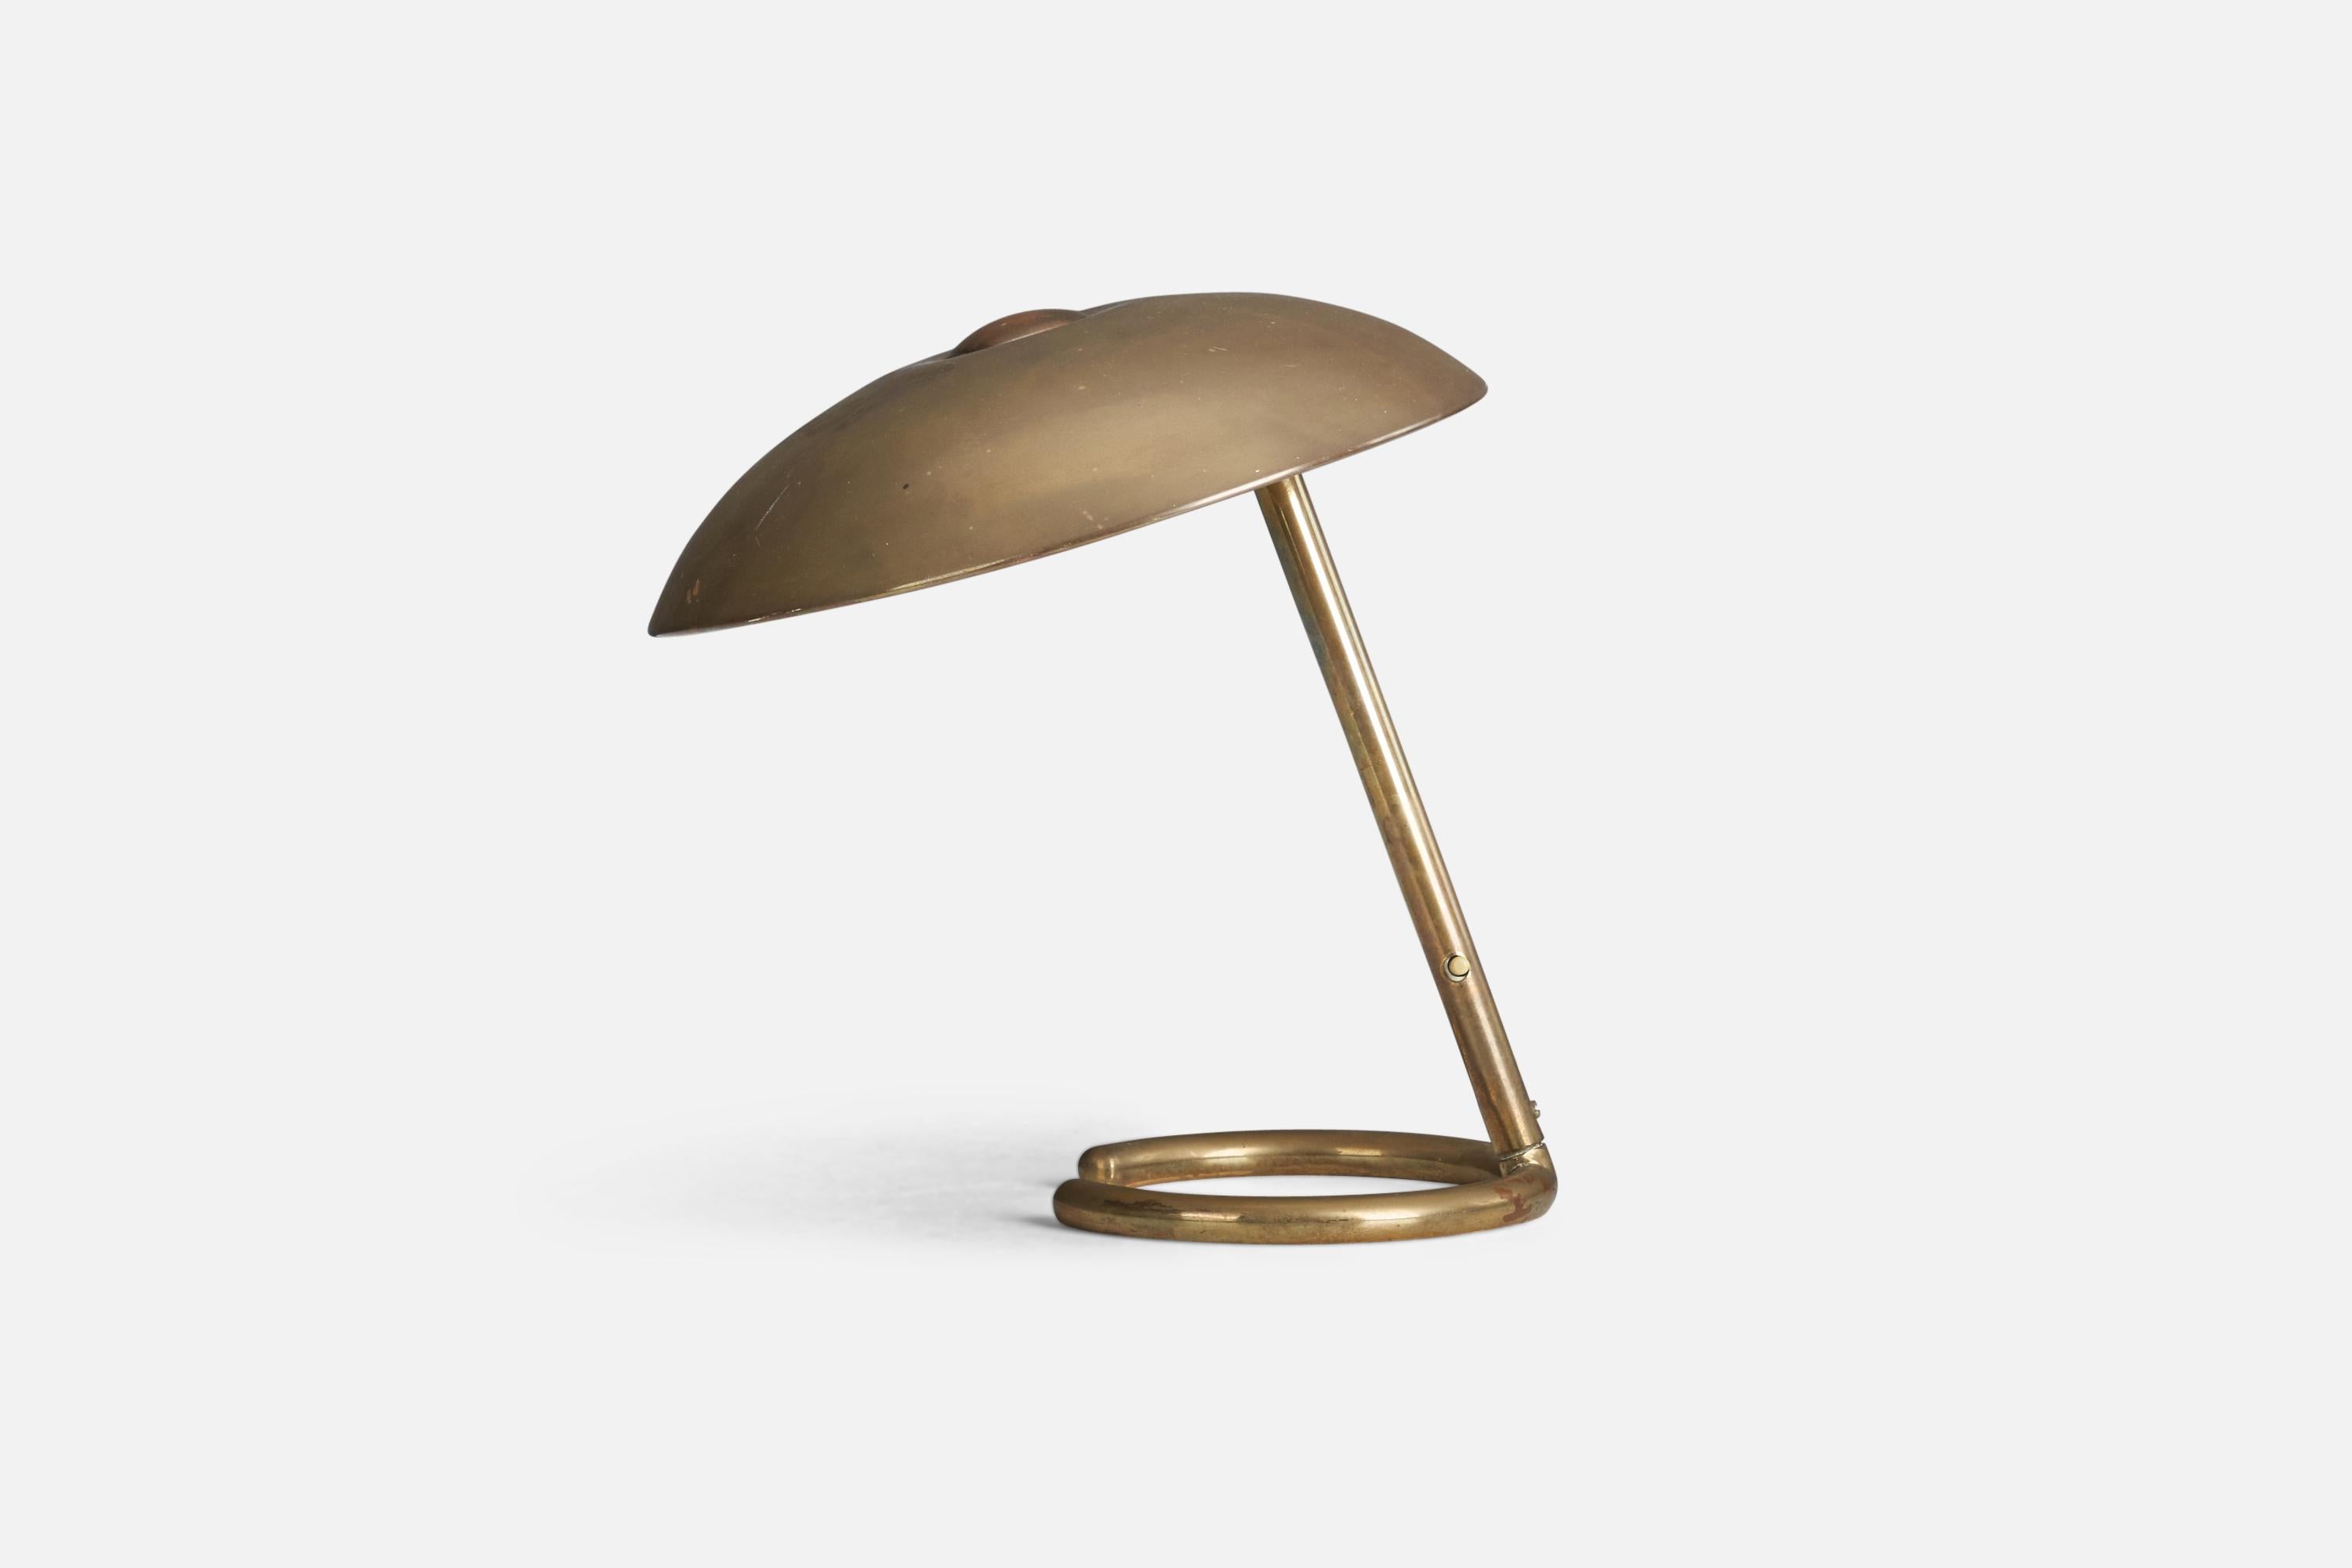 Lampe de table en laiton conçue et produite par un designer italien, Italie, années 1940.

La douille accepte les ampoules E-14.

Il n'y a pas de puissance maximale indiquée sur le luminaire.